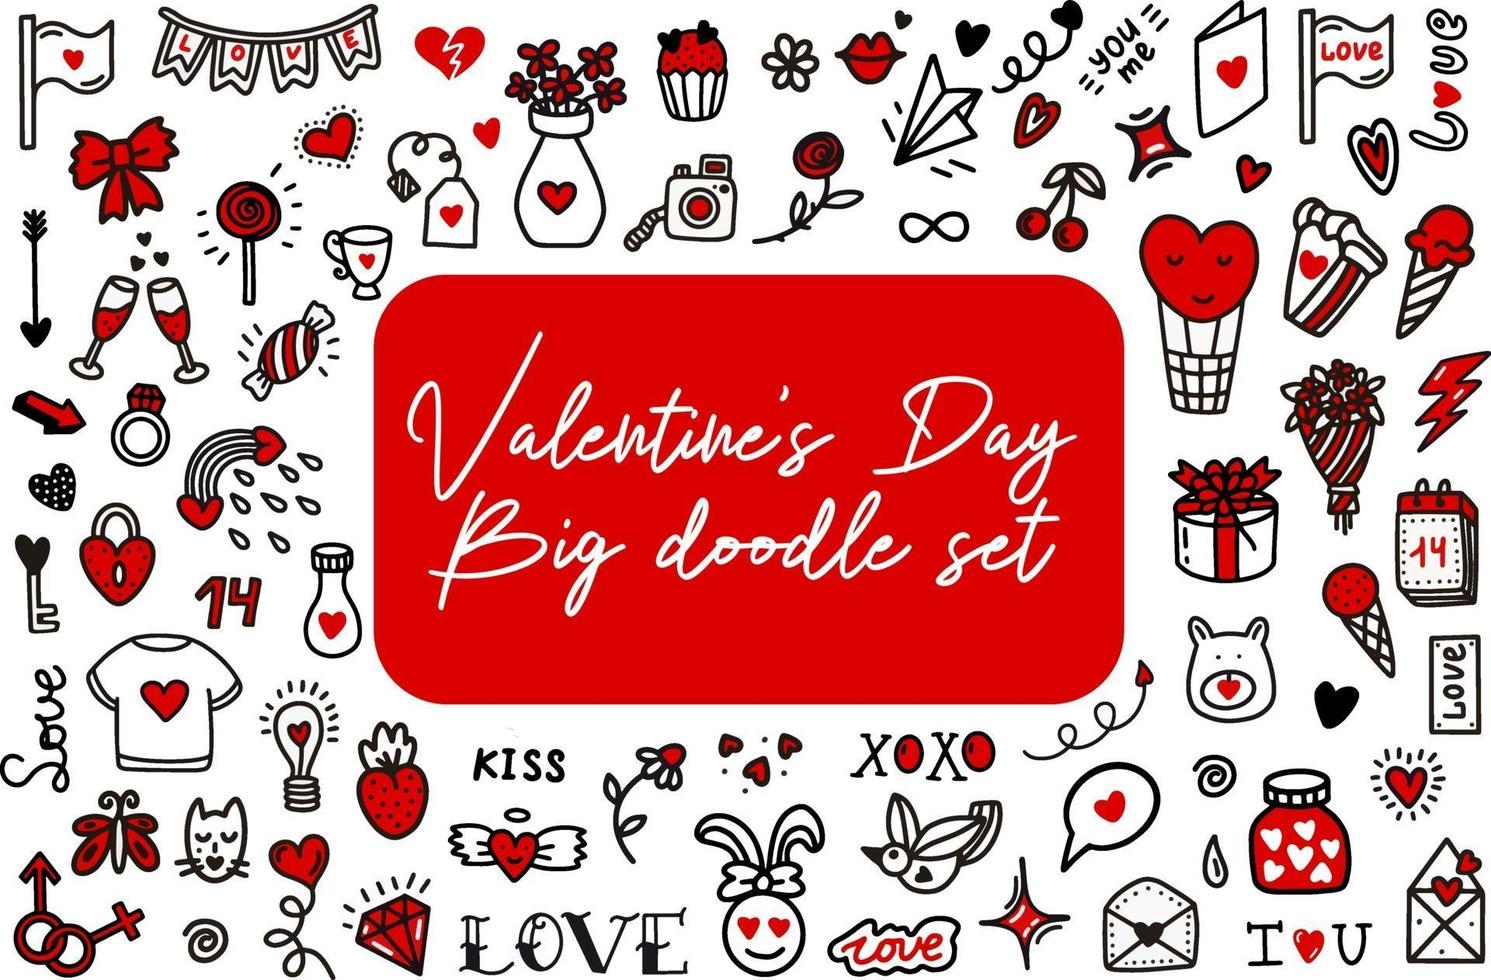 garabatos de amor del día de San Valentín. ilustración vectorial en estilo doodle. diseño para el día de san valentín, boda, tarjetas de felicitación. vector